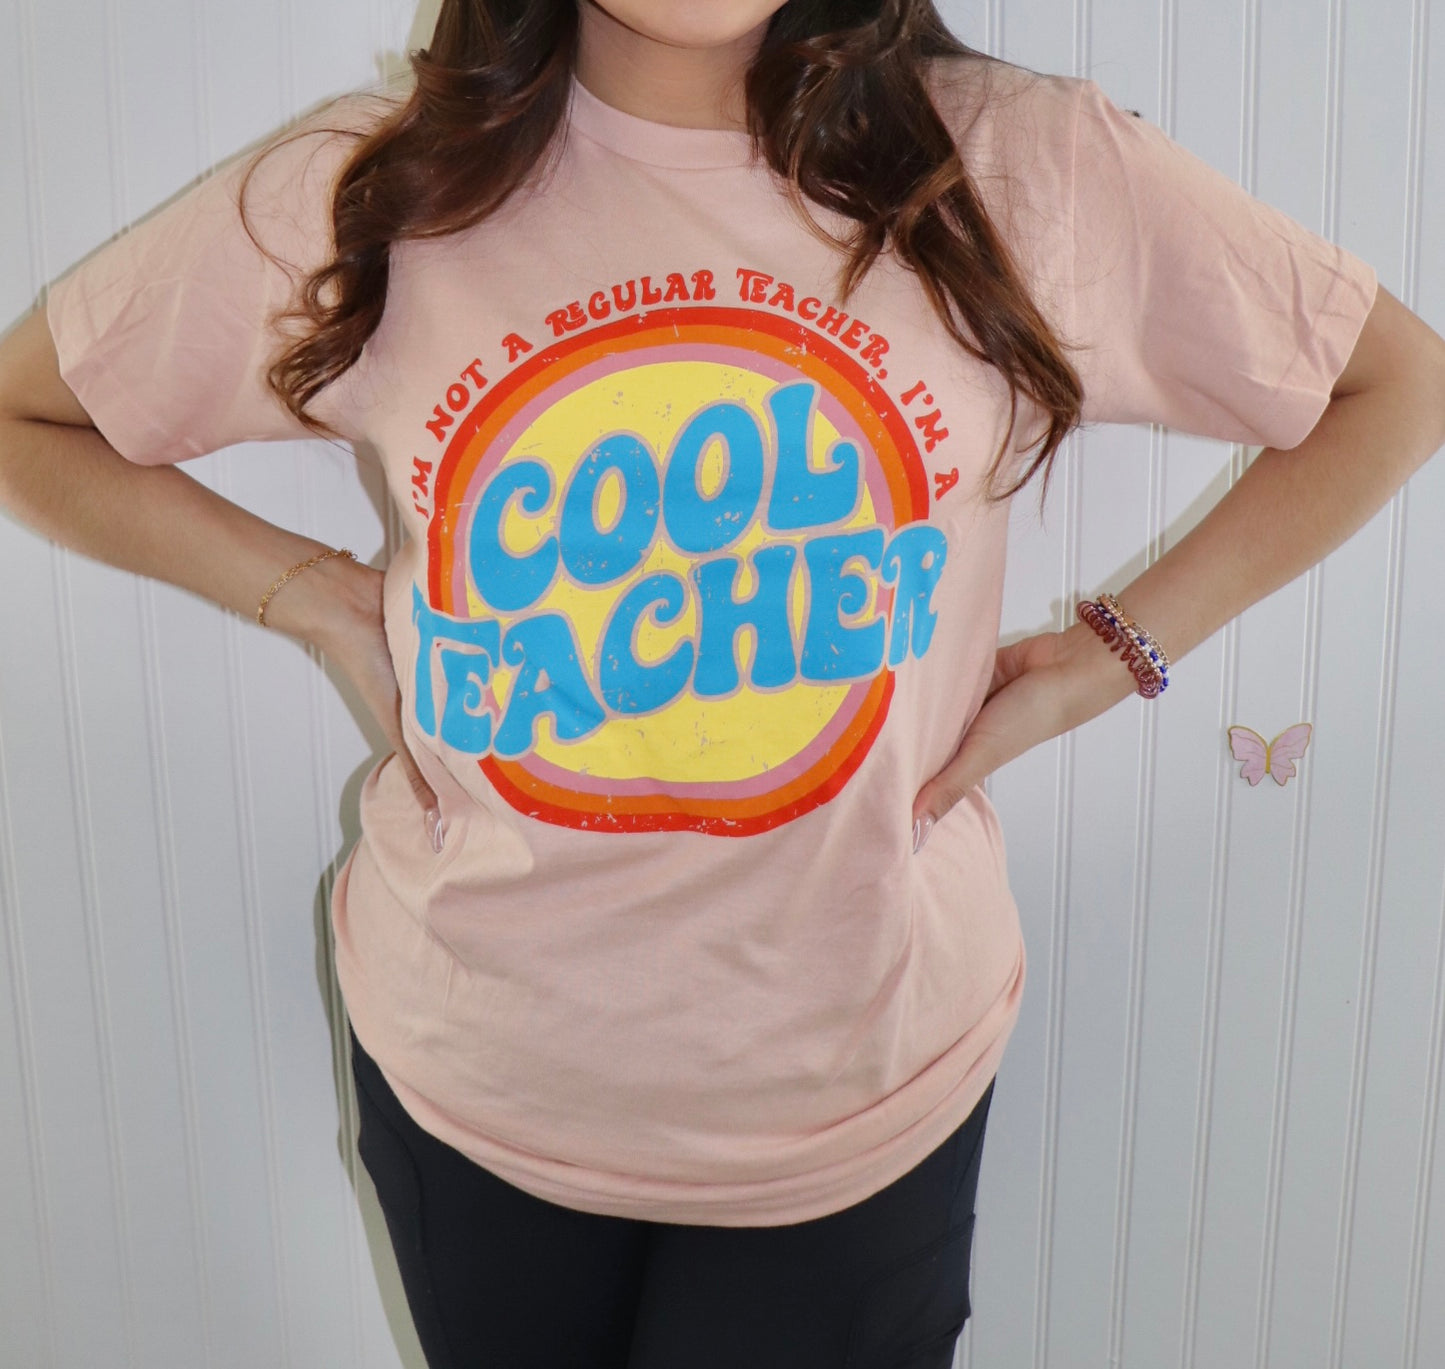 Cool Teacher T-Shirt